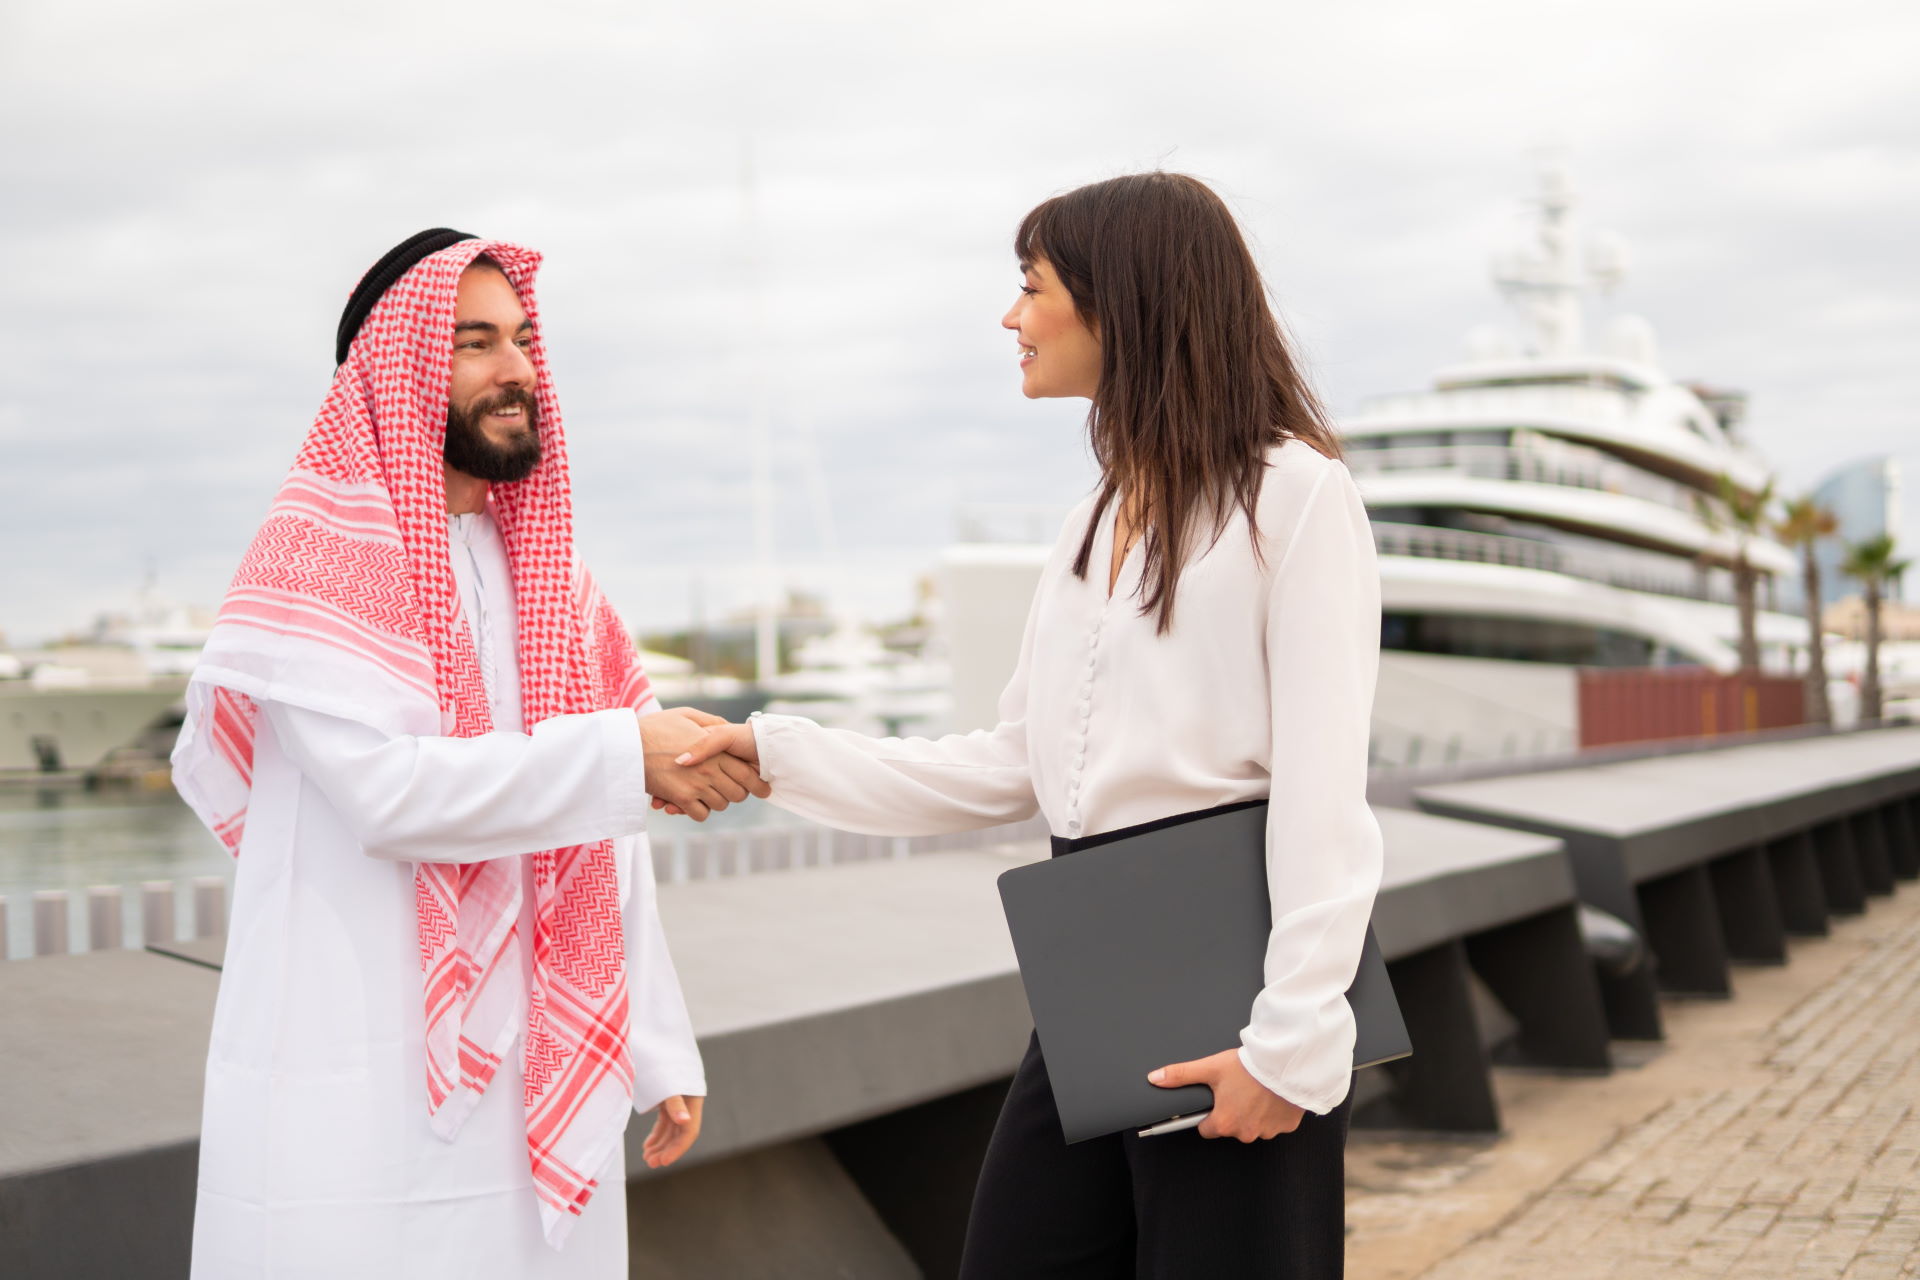 Ein Mann mit Turban schüttelt im Yachthafen einer Geschäftsfrau die Hand